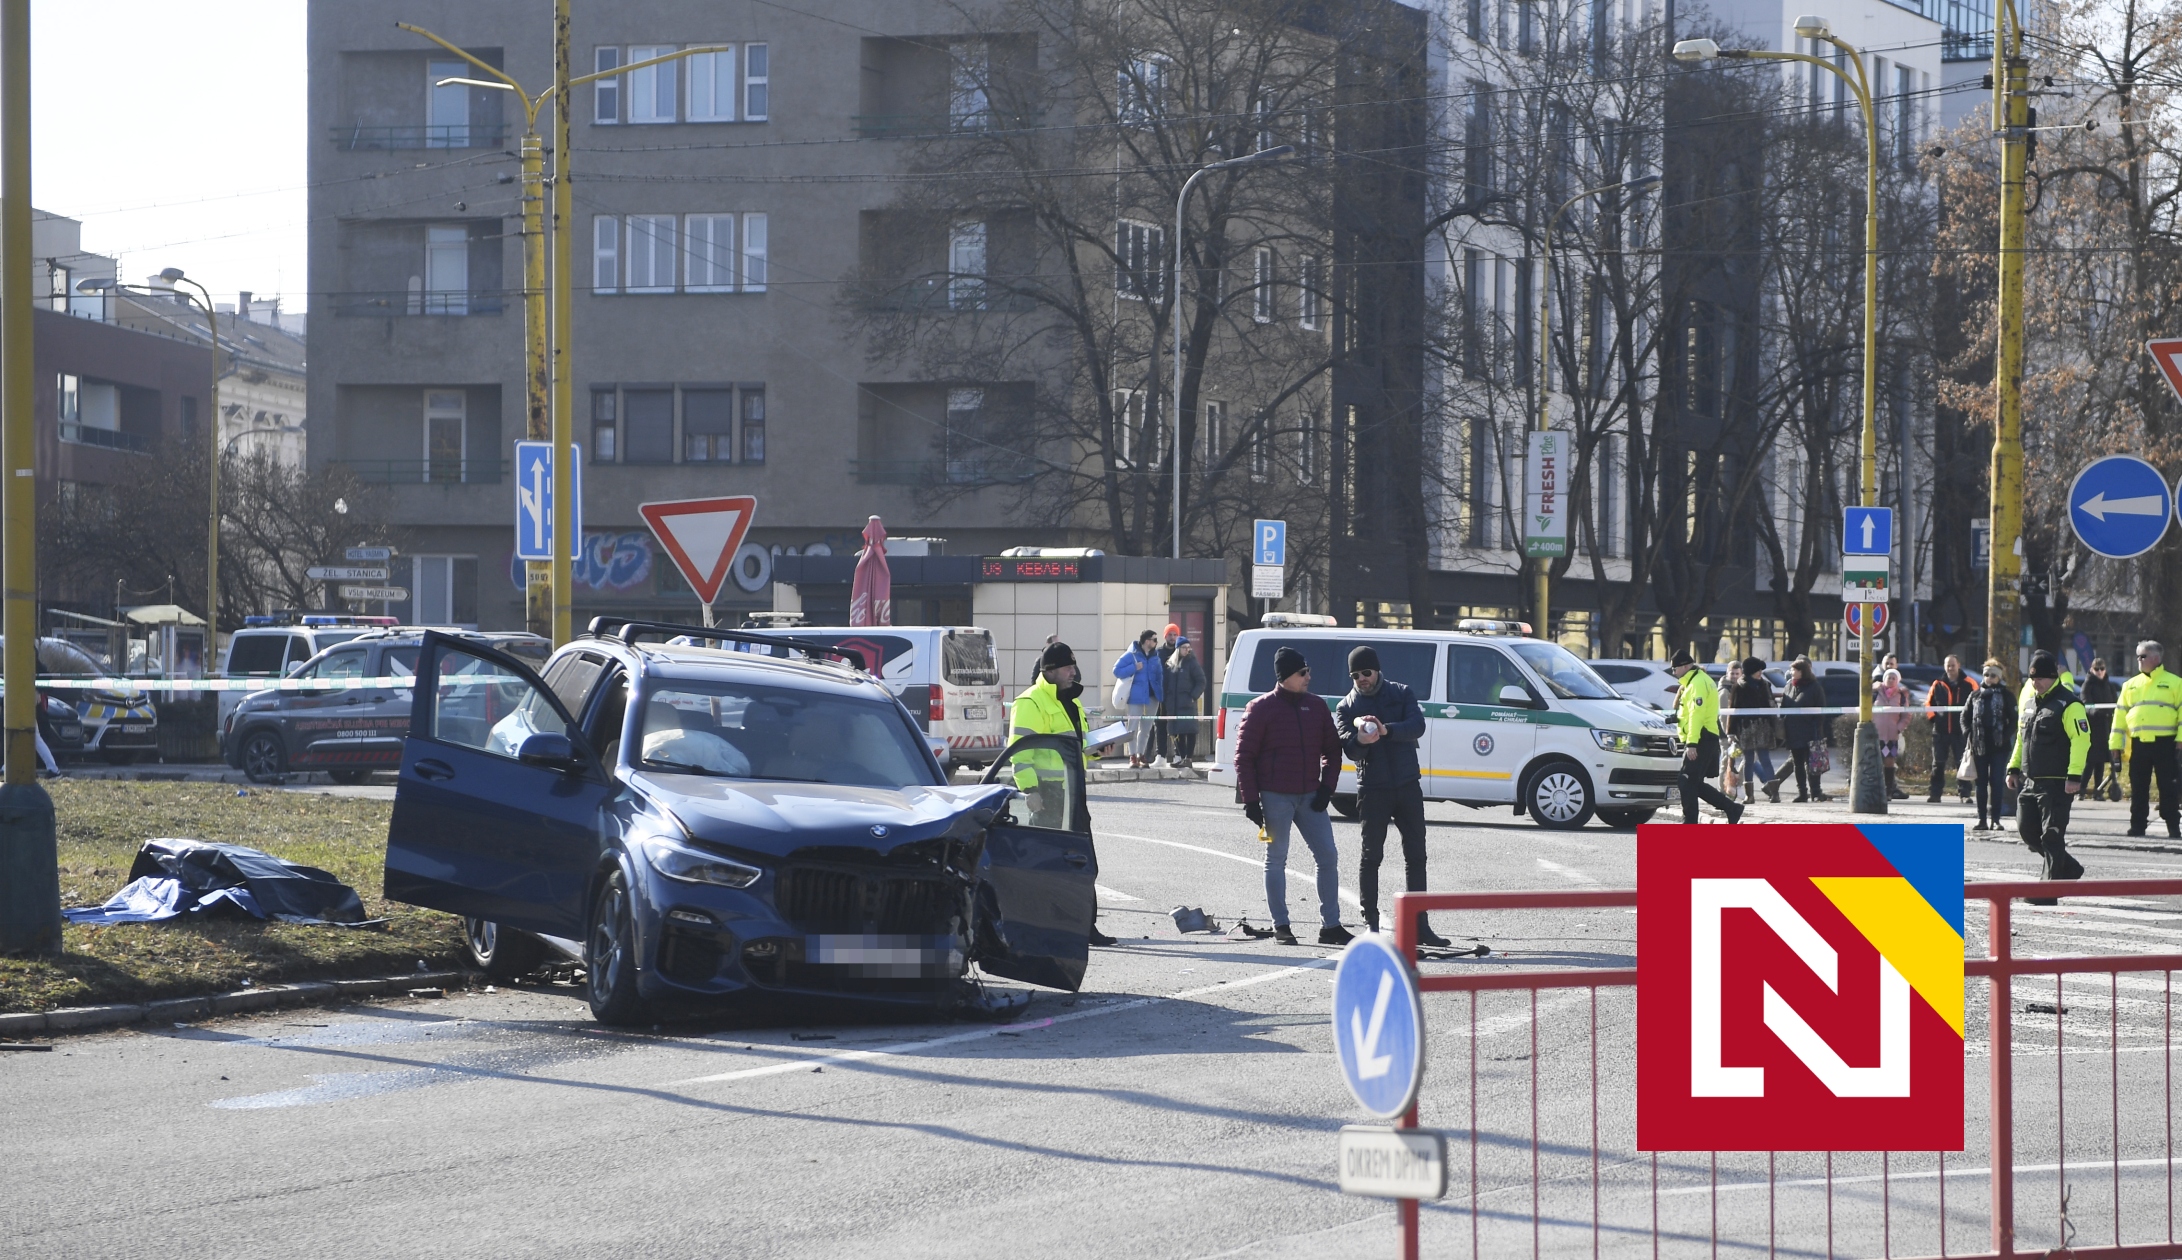 Zrekonštruovali sme nehodu v Košiciach s tromi obeťami. Je epilepsia iba obrana alebo dostal vodič BMW naozaj záchvat?